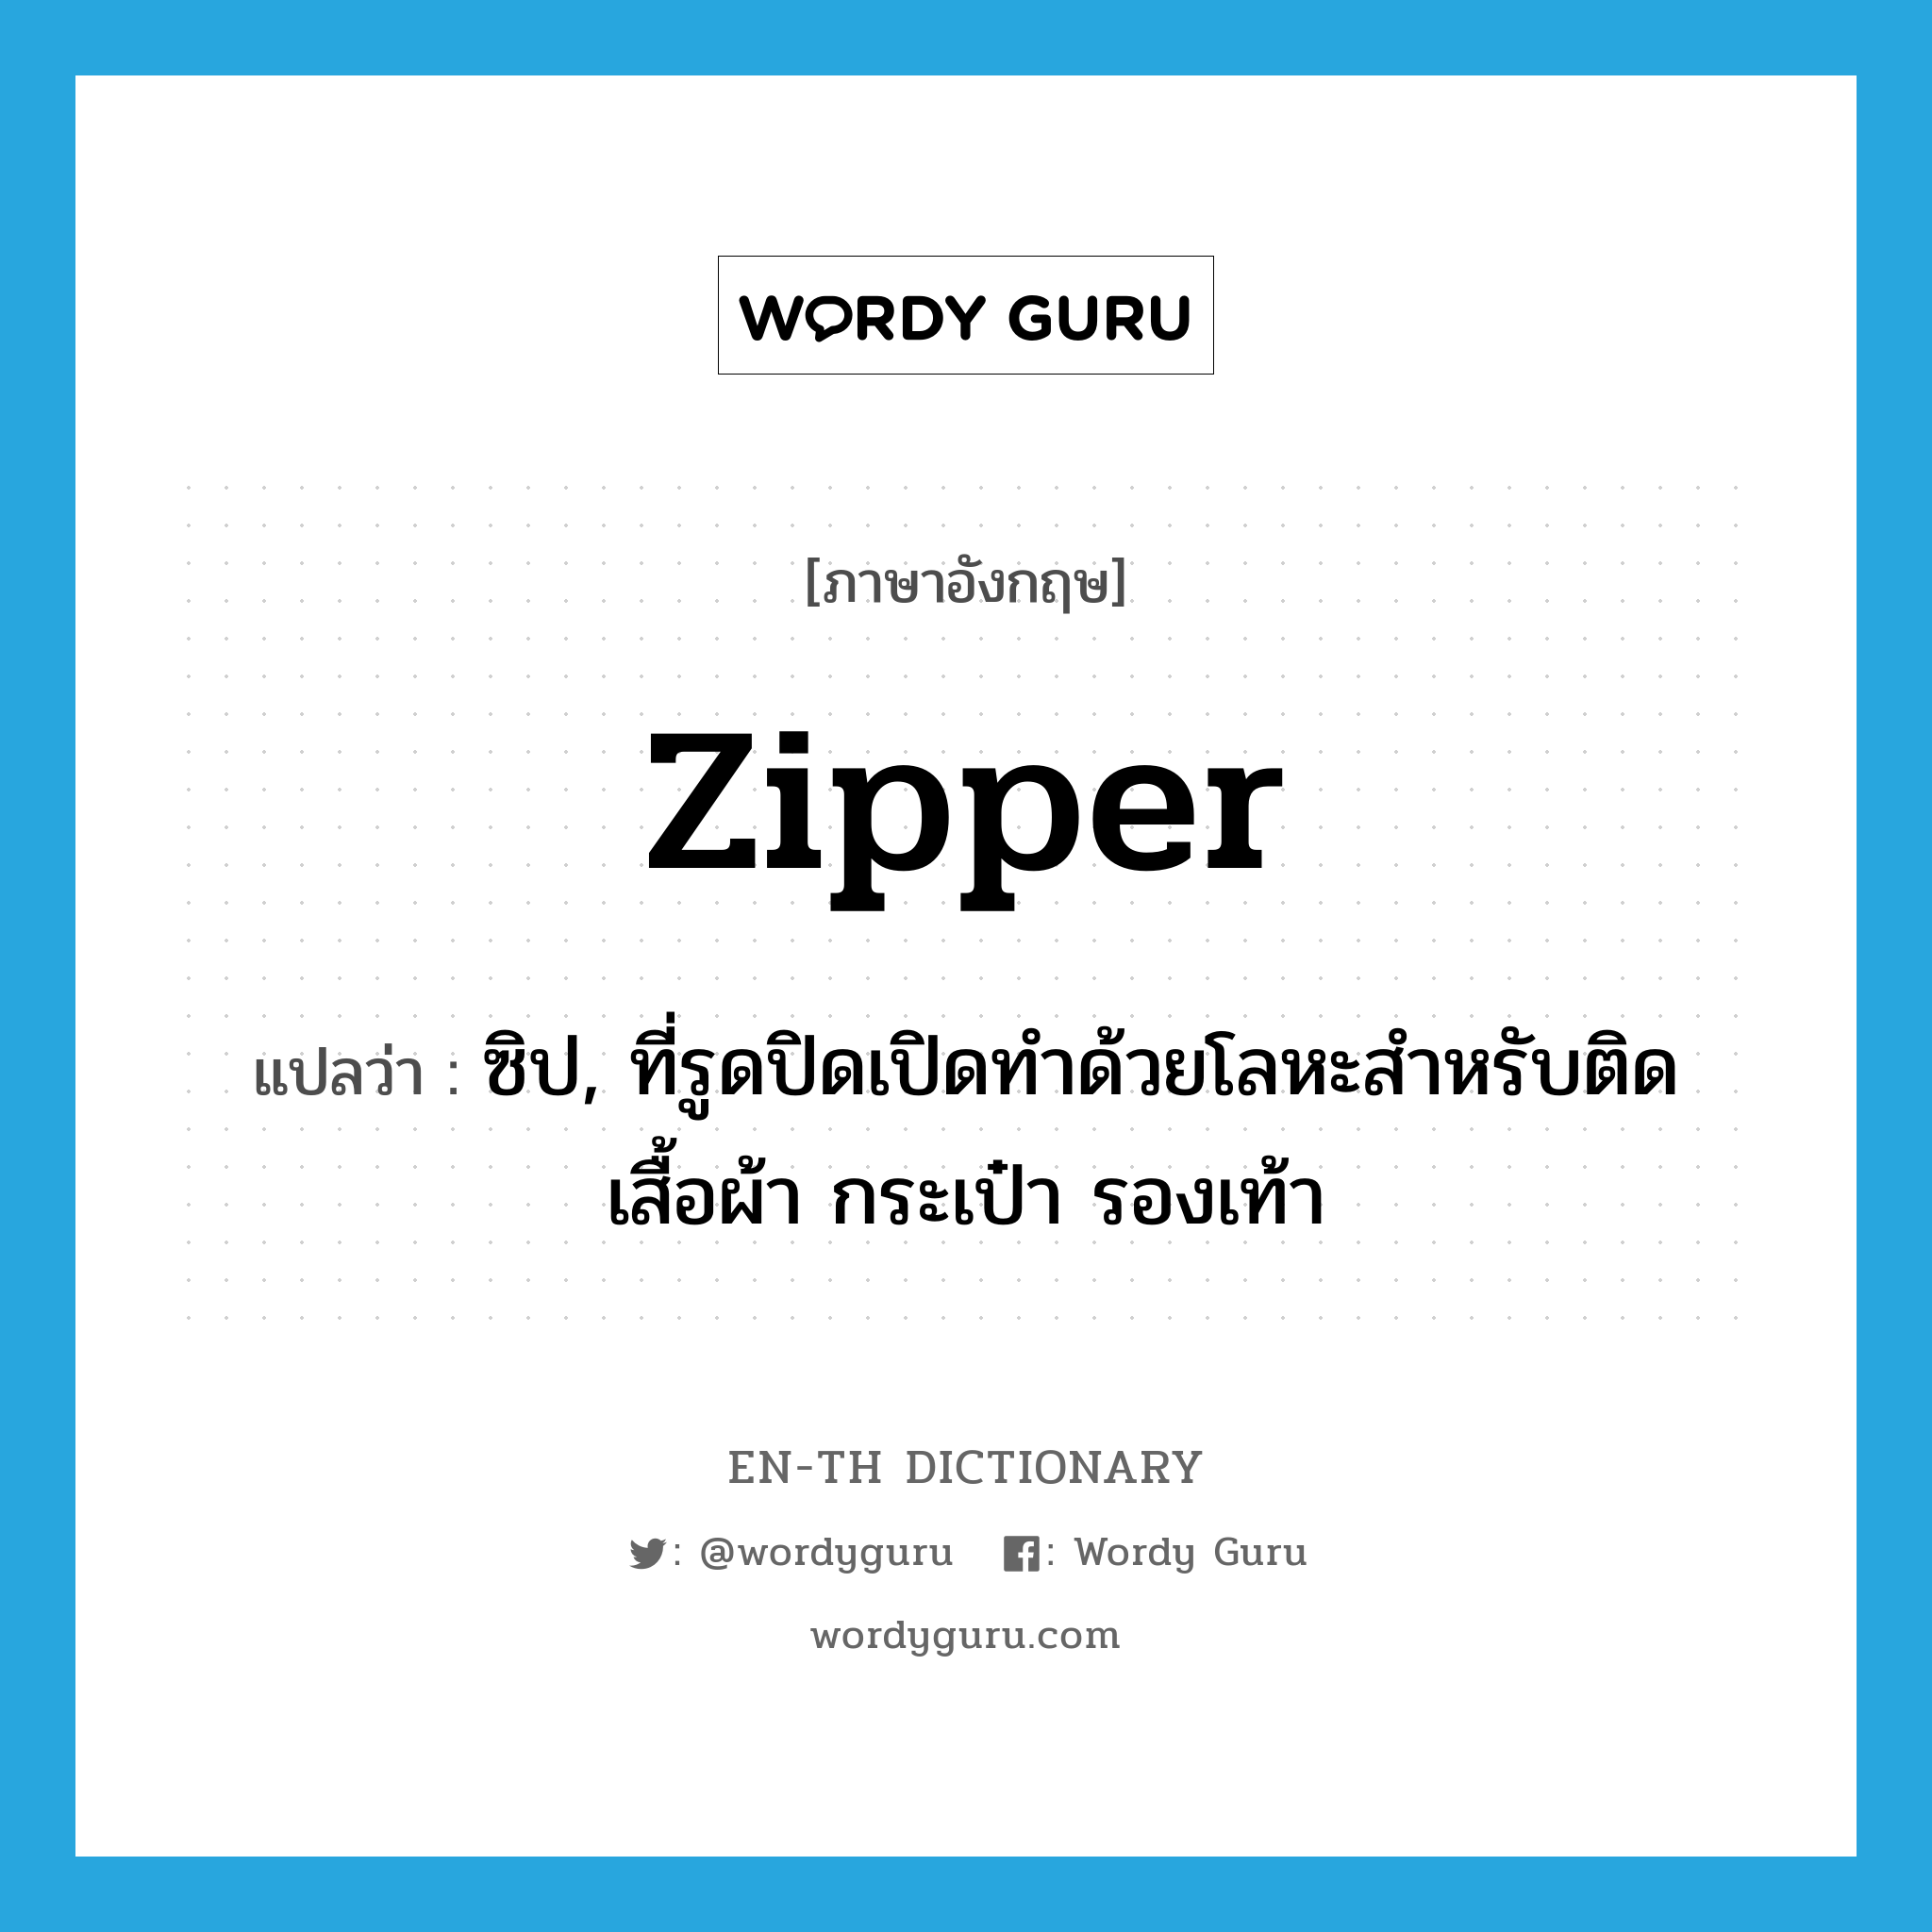 zipper แปลว่า?, คำศัพท์ภาษาอังกฤษ zipper แปลว่า ซิป, ที่รูดปิดเปิดทำด้วยโลหะสำหรับติดเสื้อผ้า กระเป๋า รองเท้า ประเภท N หมวด N